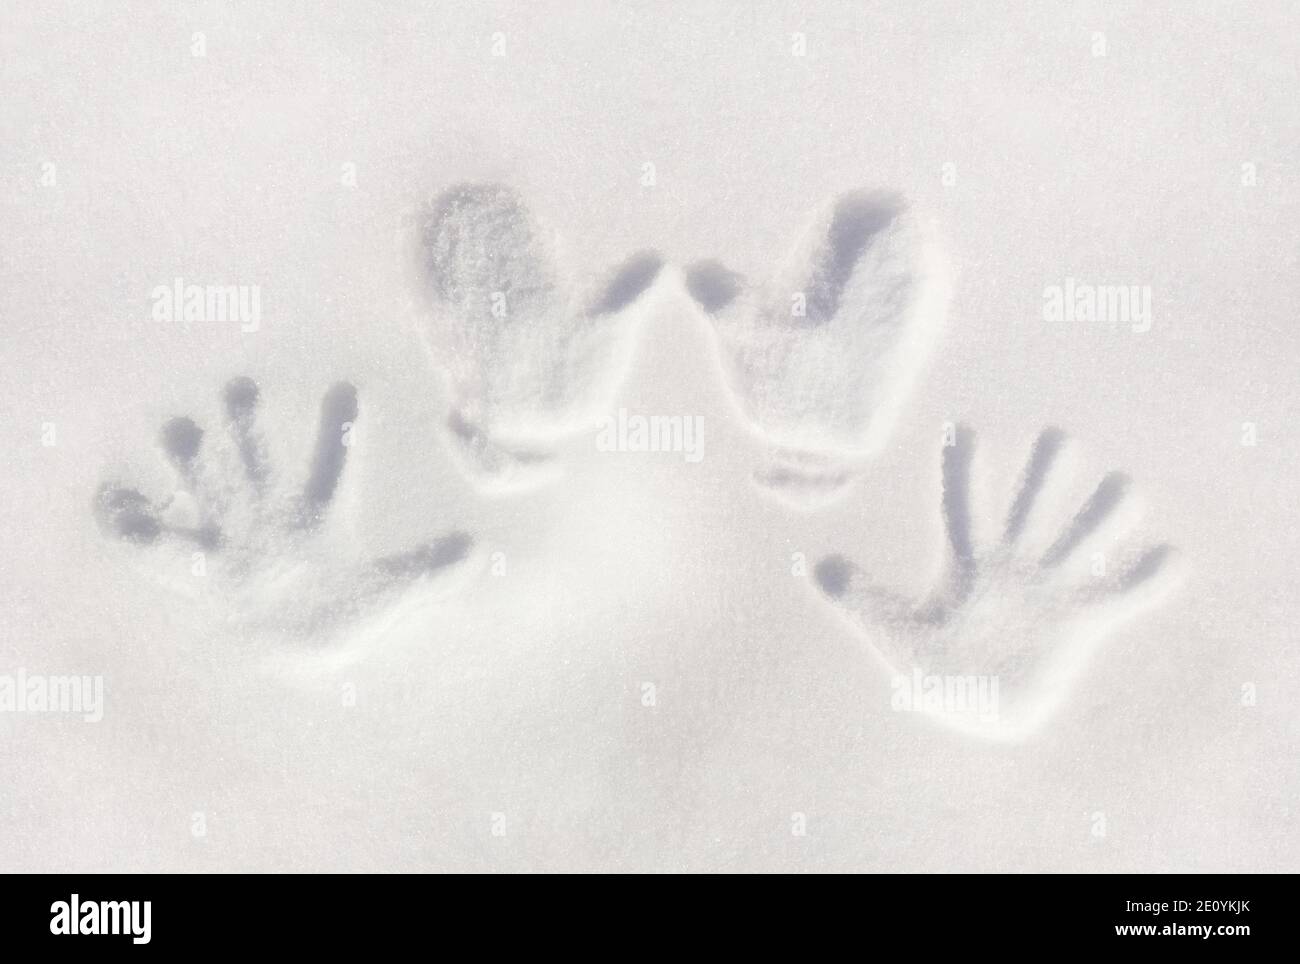 Arrière-plan hivernal avec des empreintes de palmiers des mains humaines sur une surface de neige claire. Banque D'Images